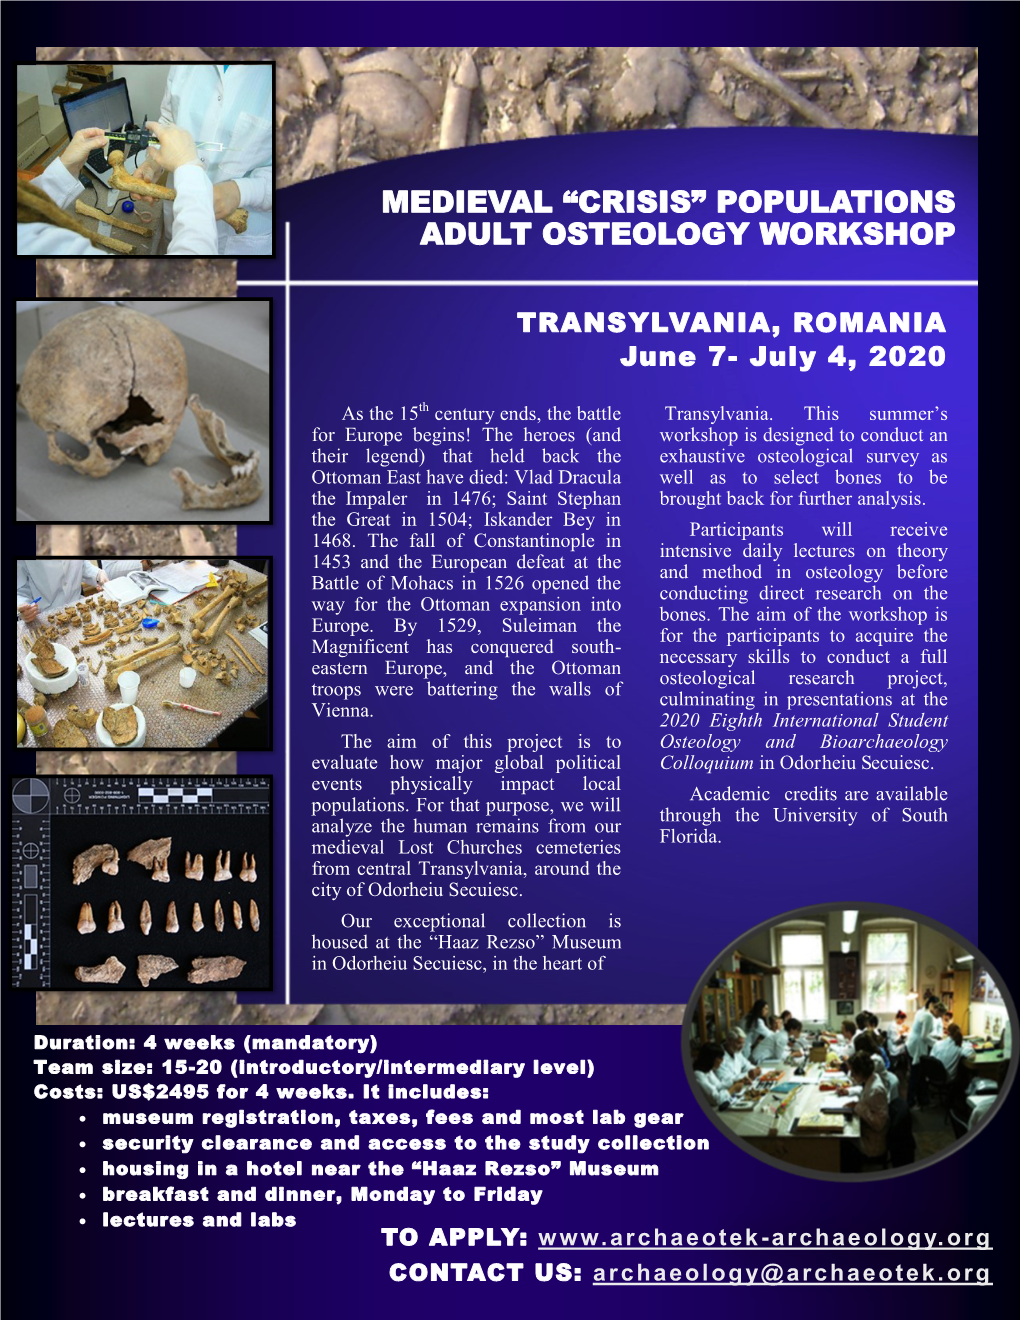 Medieval “Crisis” Populations Adult Osteology Workshop